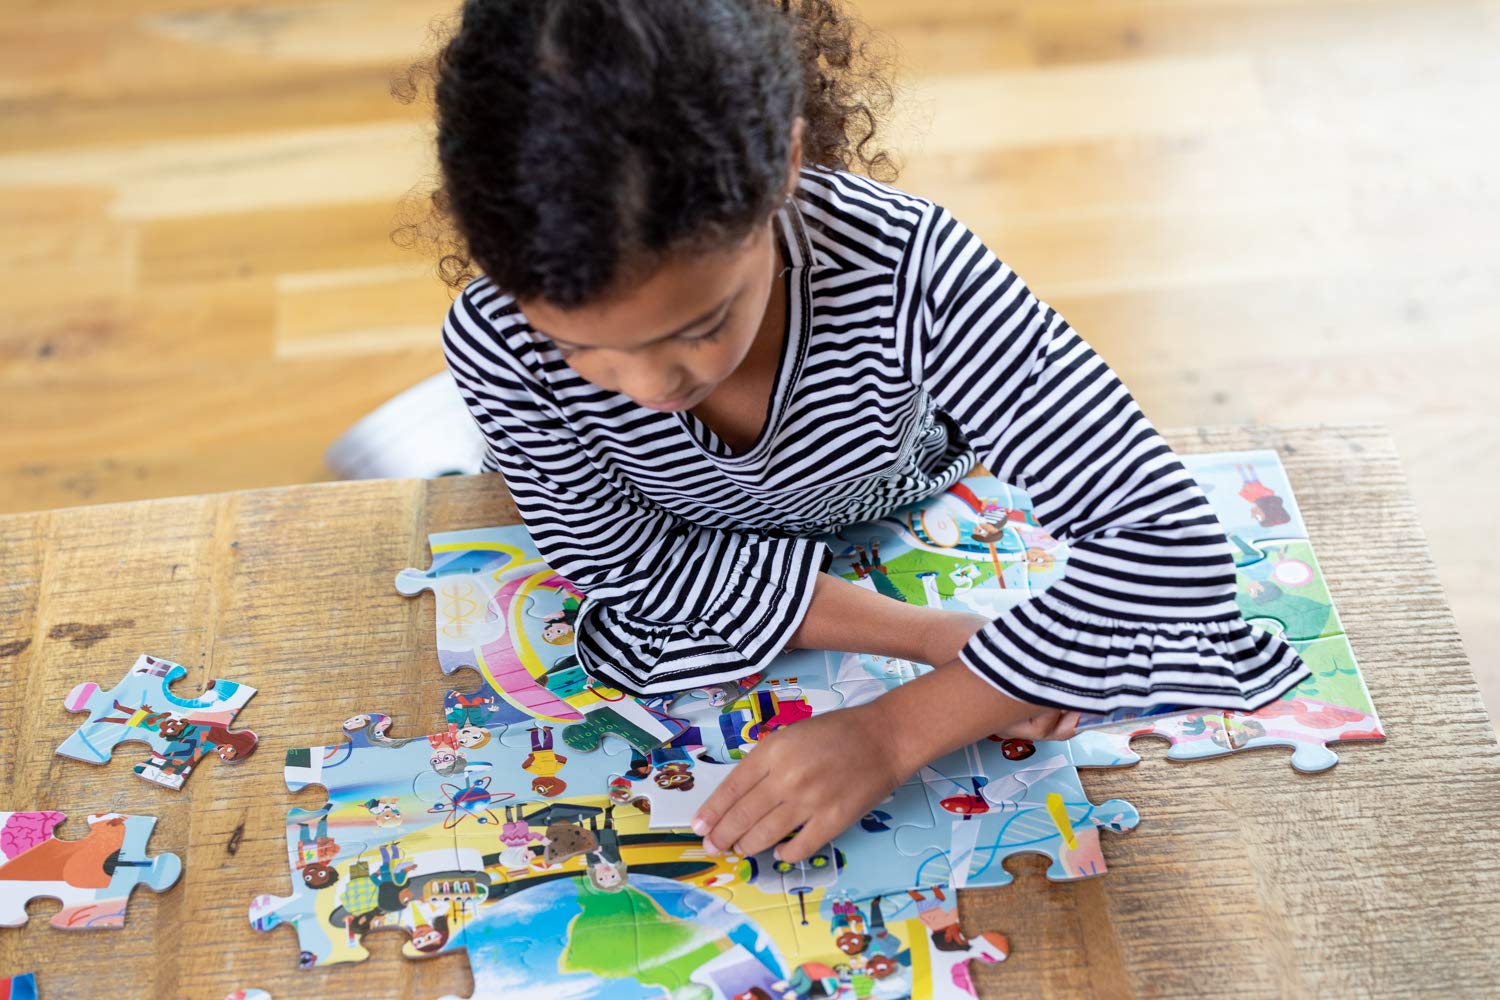 Kegiatan Kreatif yang Menyenangkan untuk Anak Usia 3-5 Tahun - Menyusun Puzzle